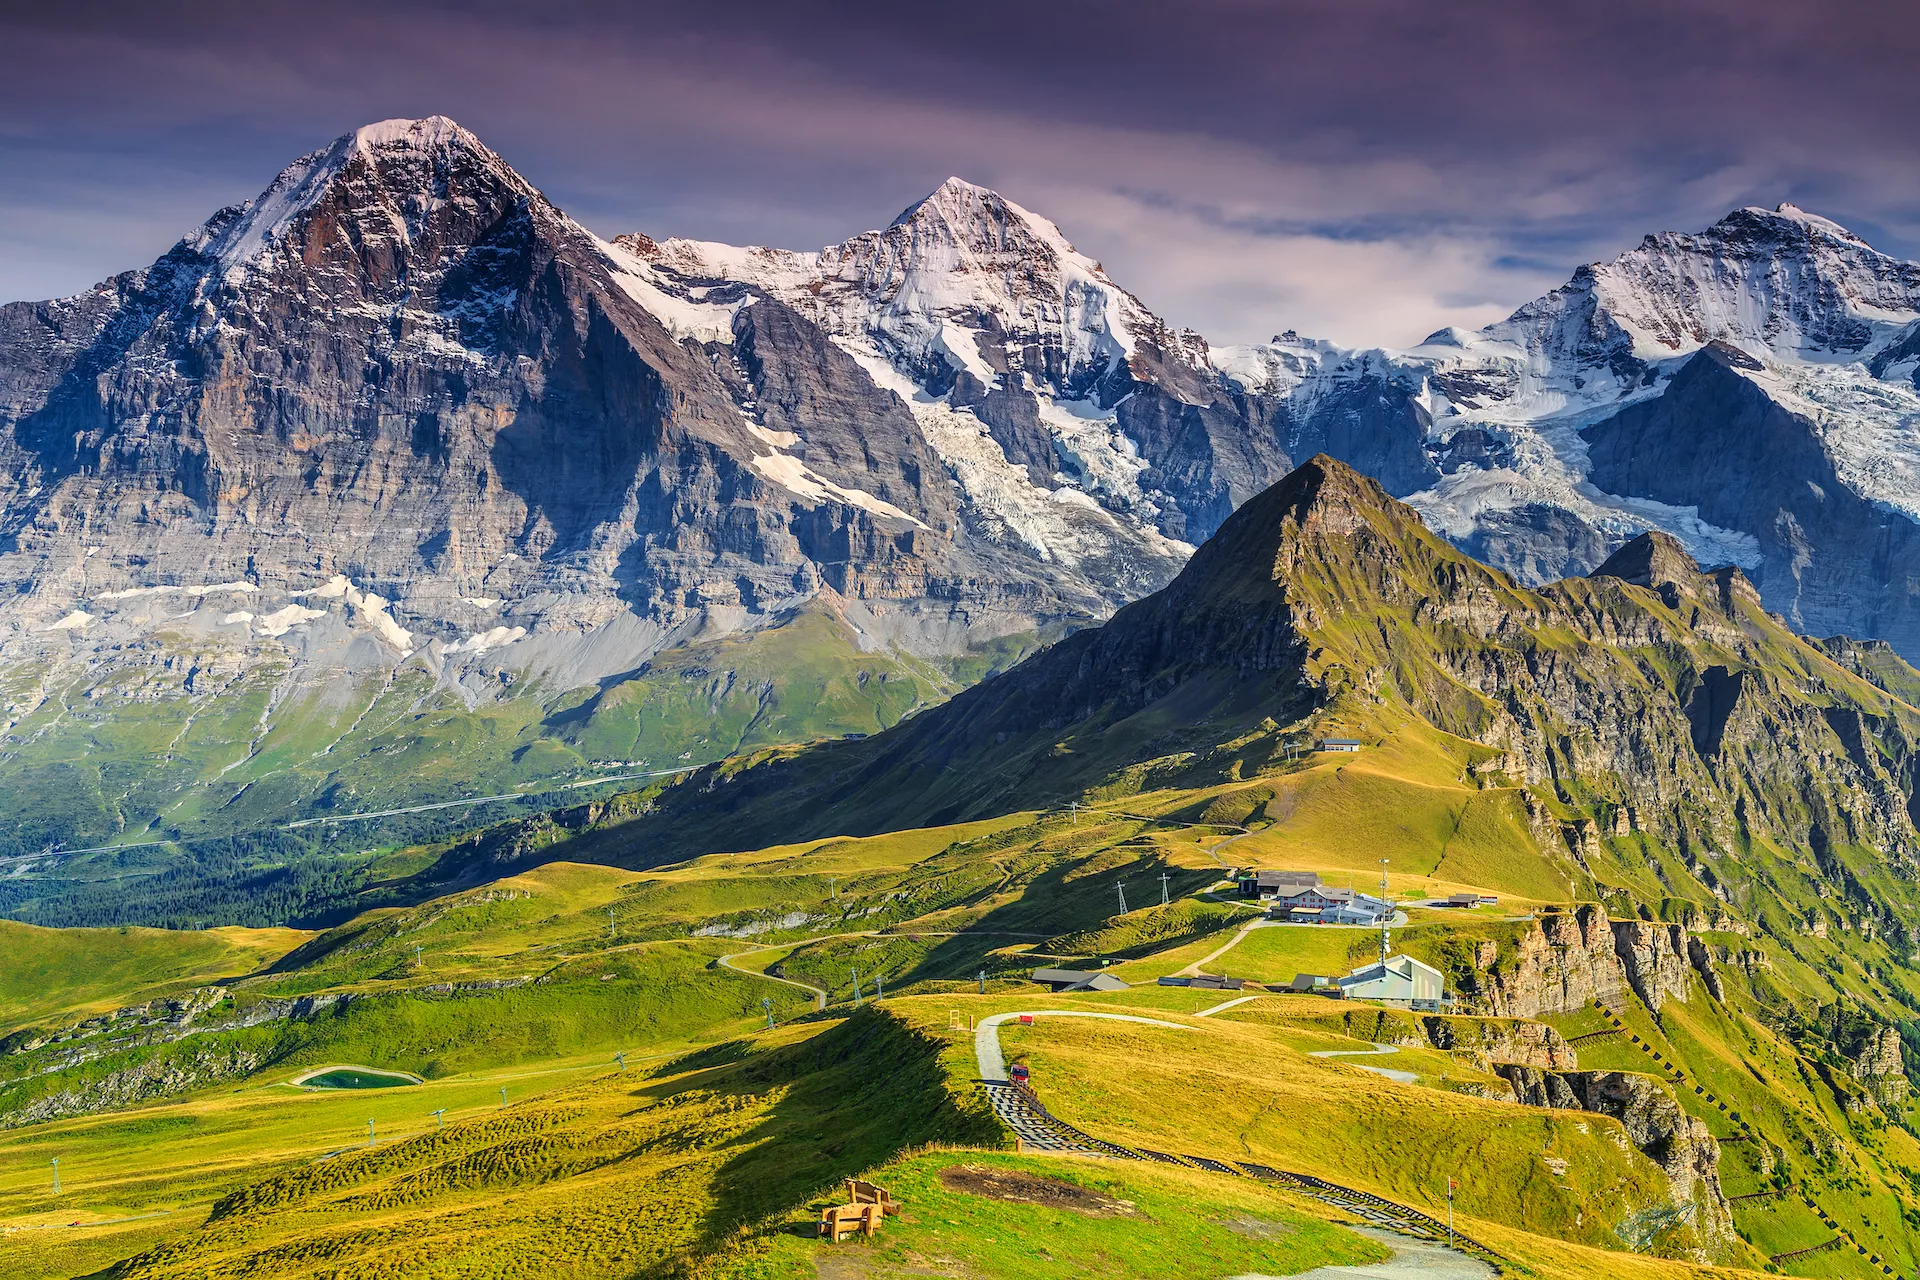 Prachtig alpenpanorama met Jungfrau Monch Eiger noordwand en Mannlichen kabelbaanstation Grindelwald